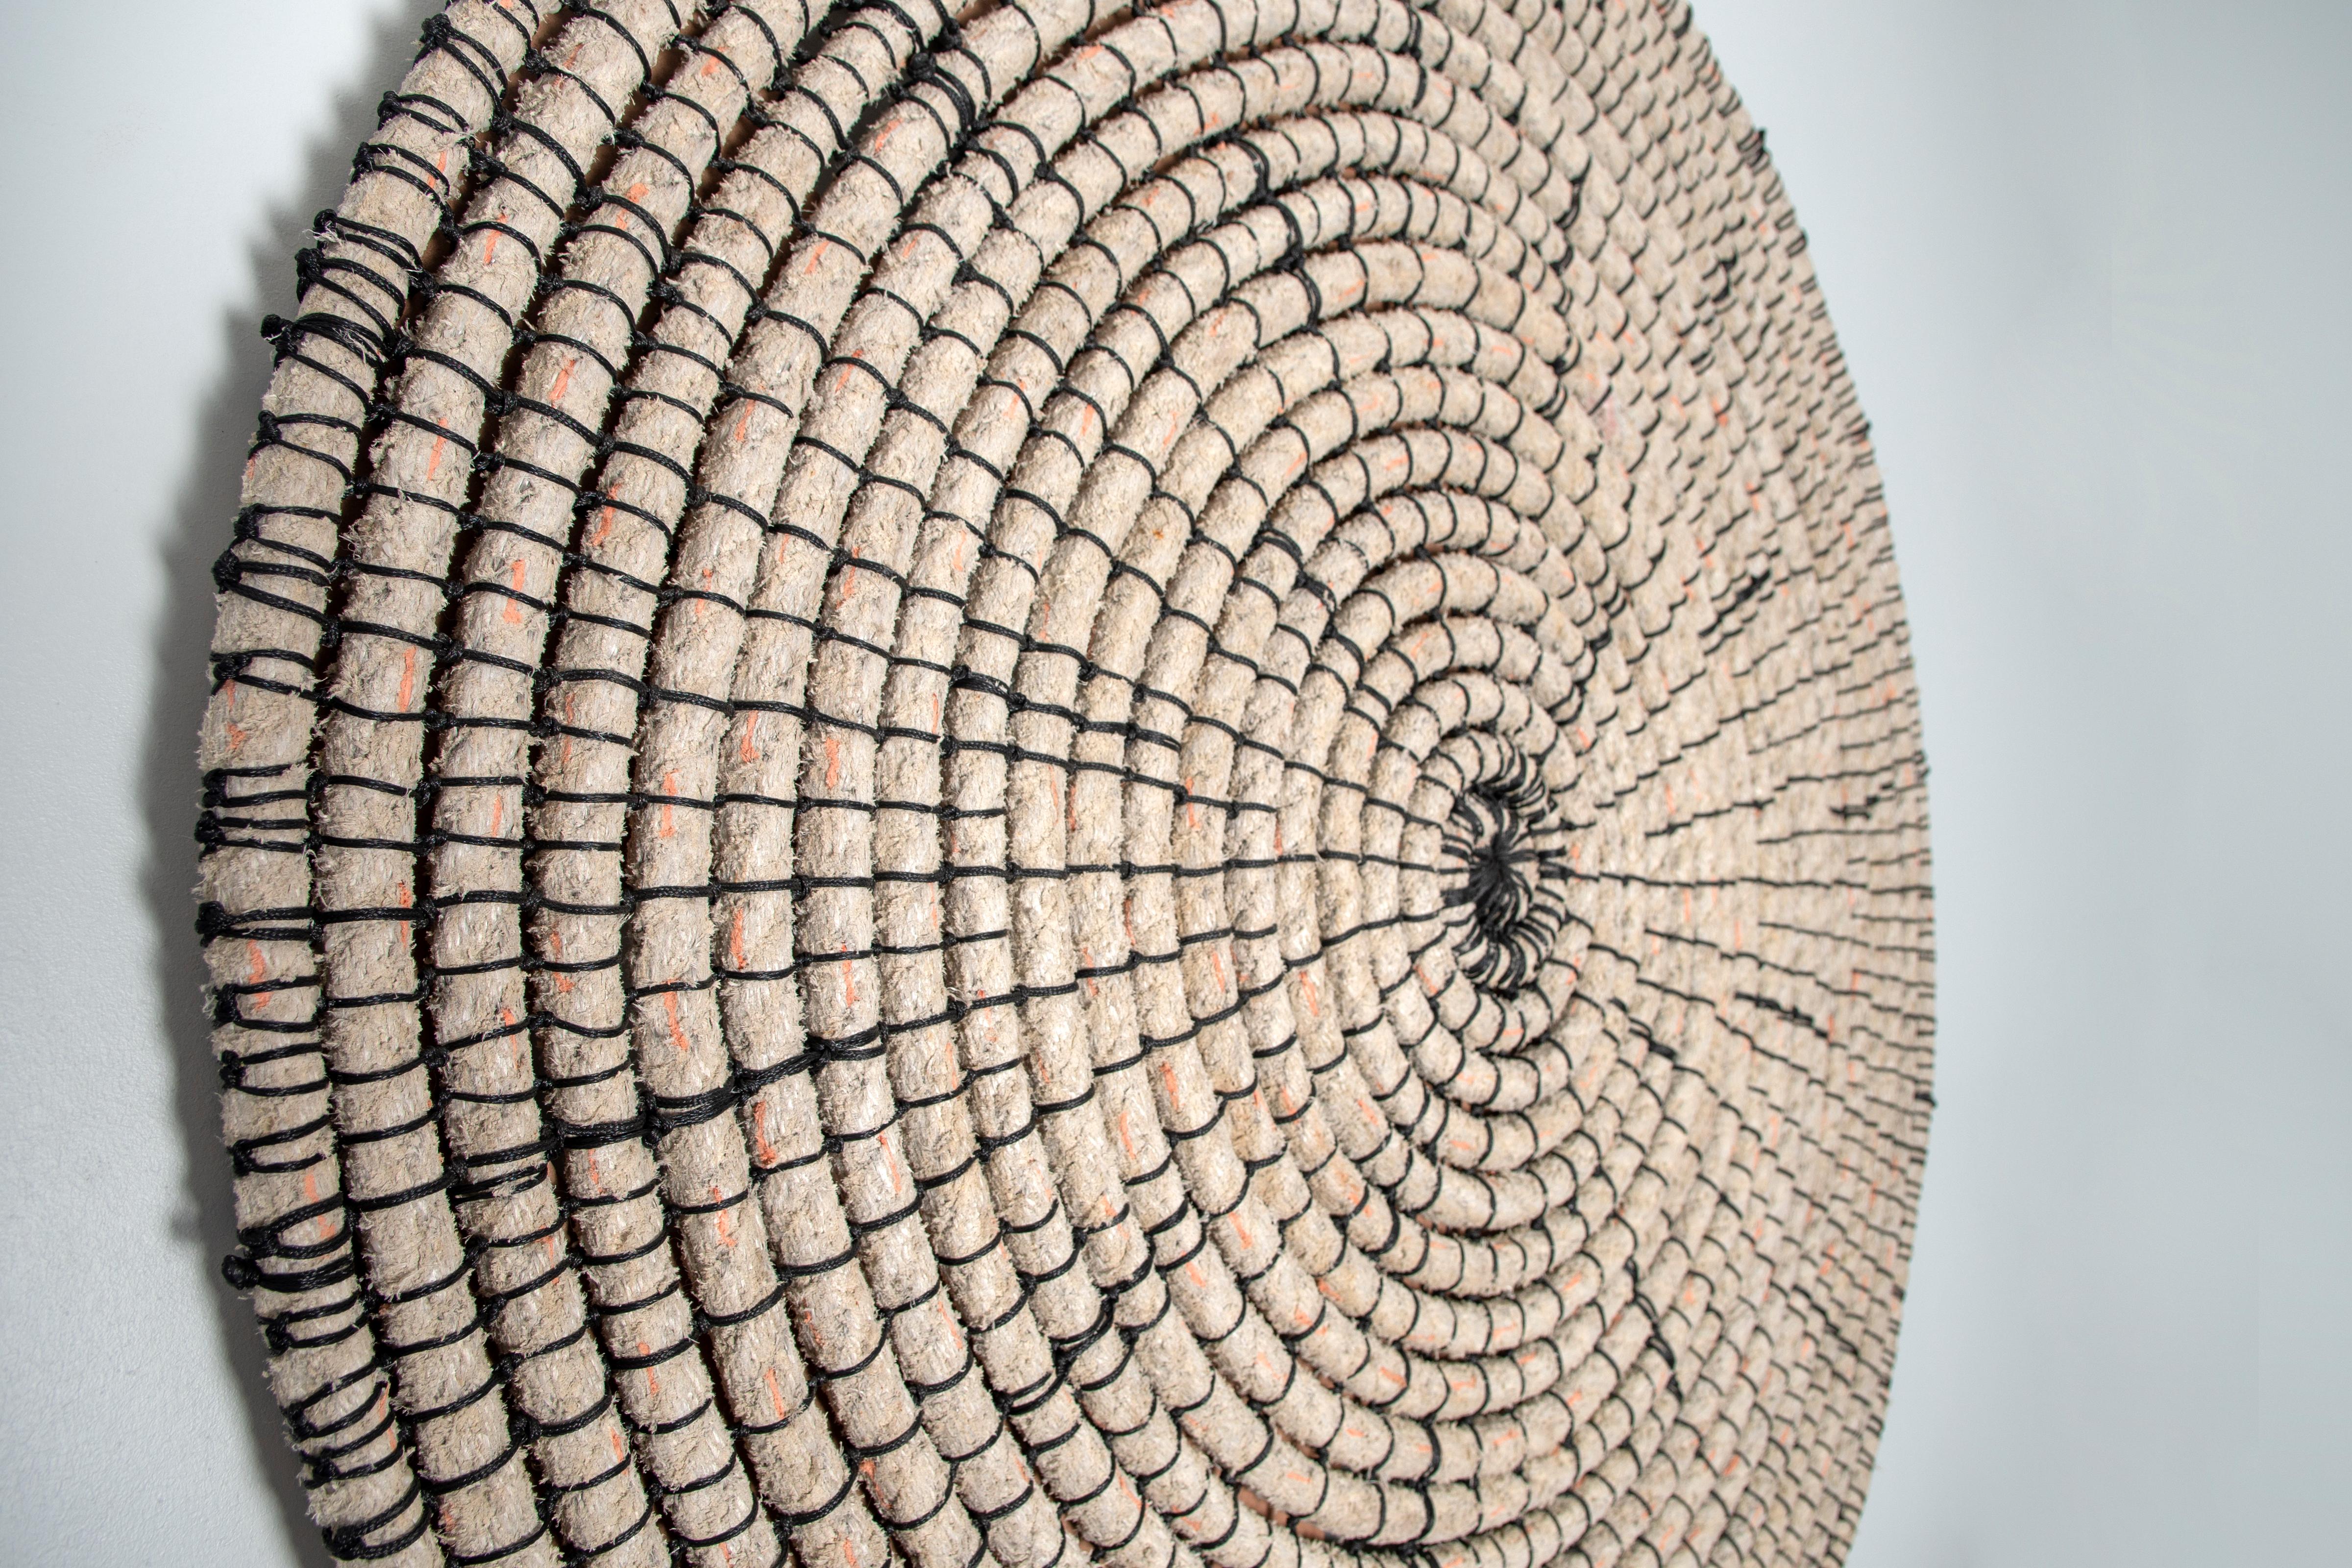 Baskets reimagined 1, Laimi Mbangula, rope, acrylic string, wooden base 4